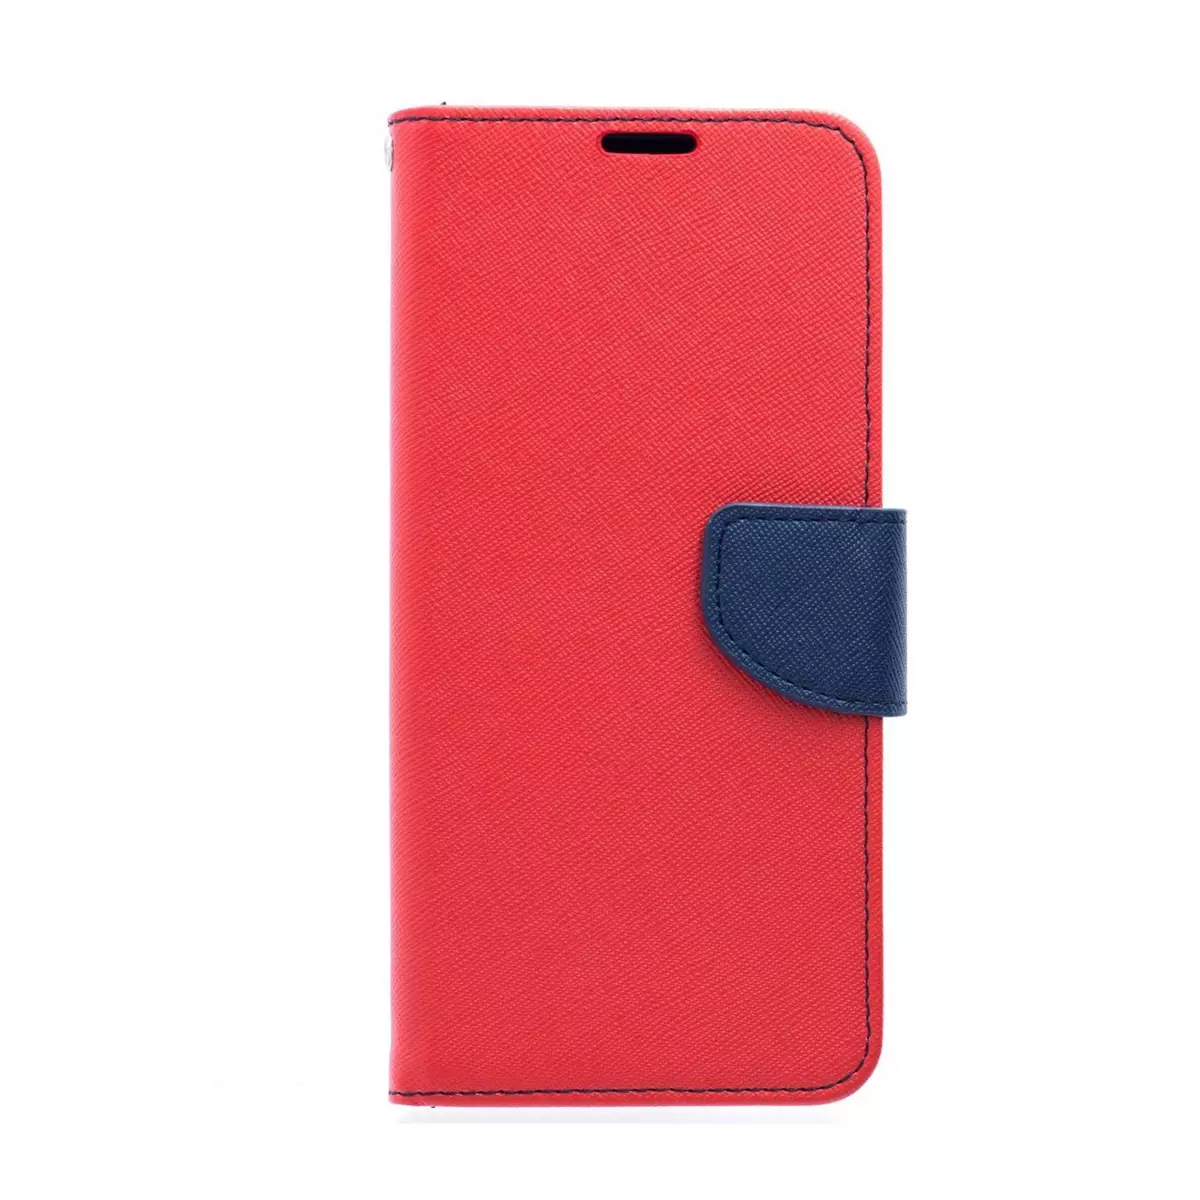 amahousse Housse Galaxy S8 Plus folio rouge texturé languette